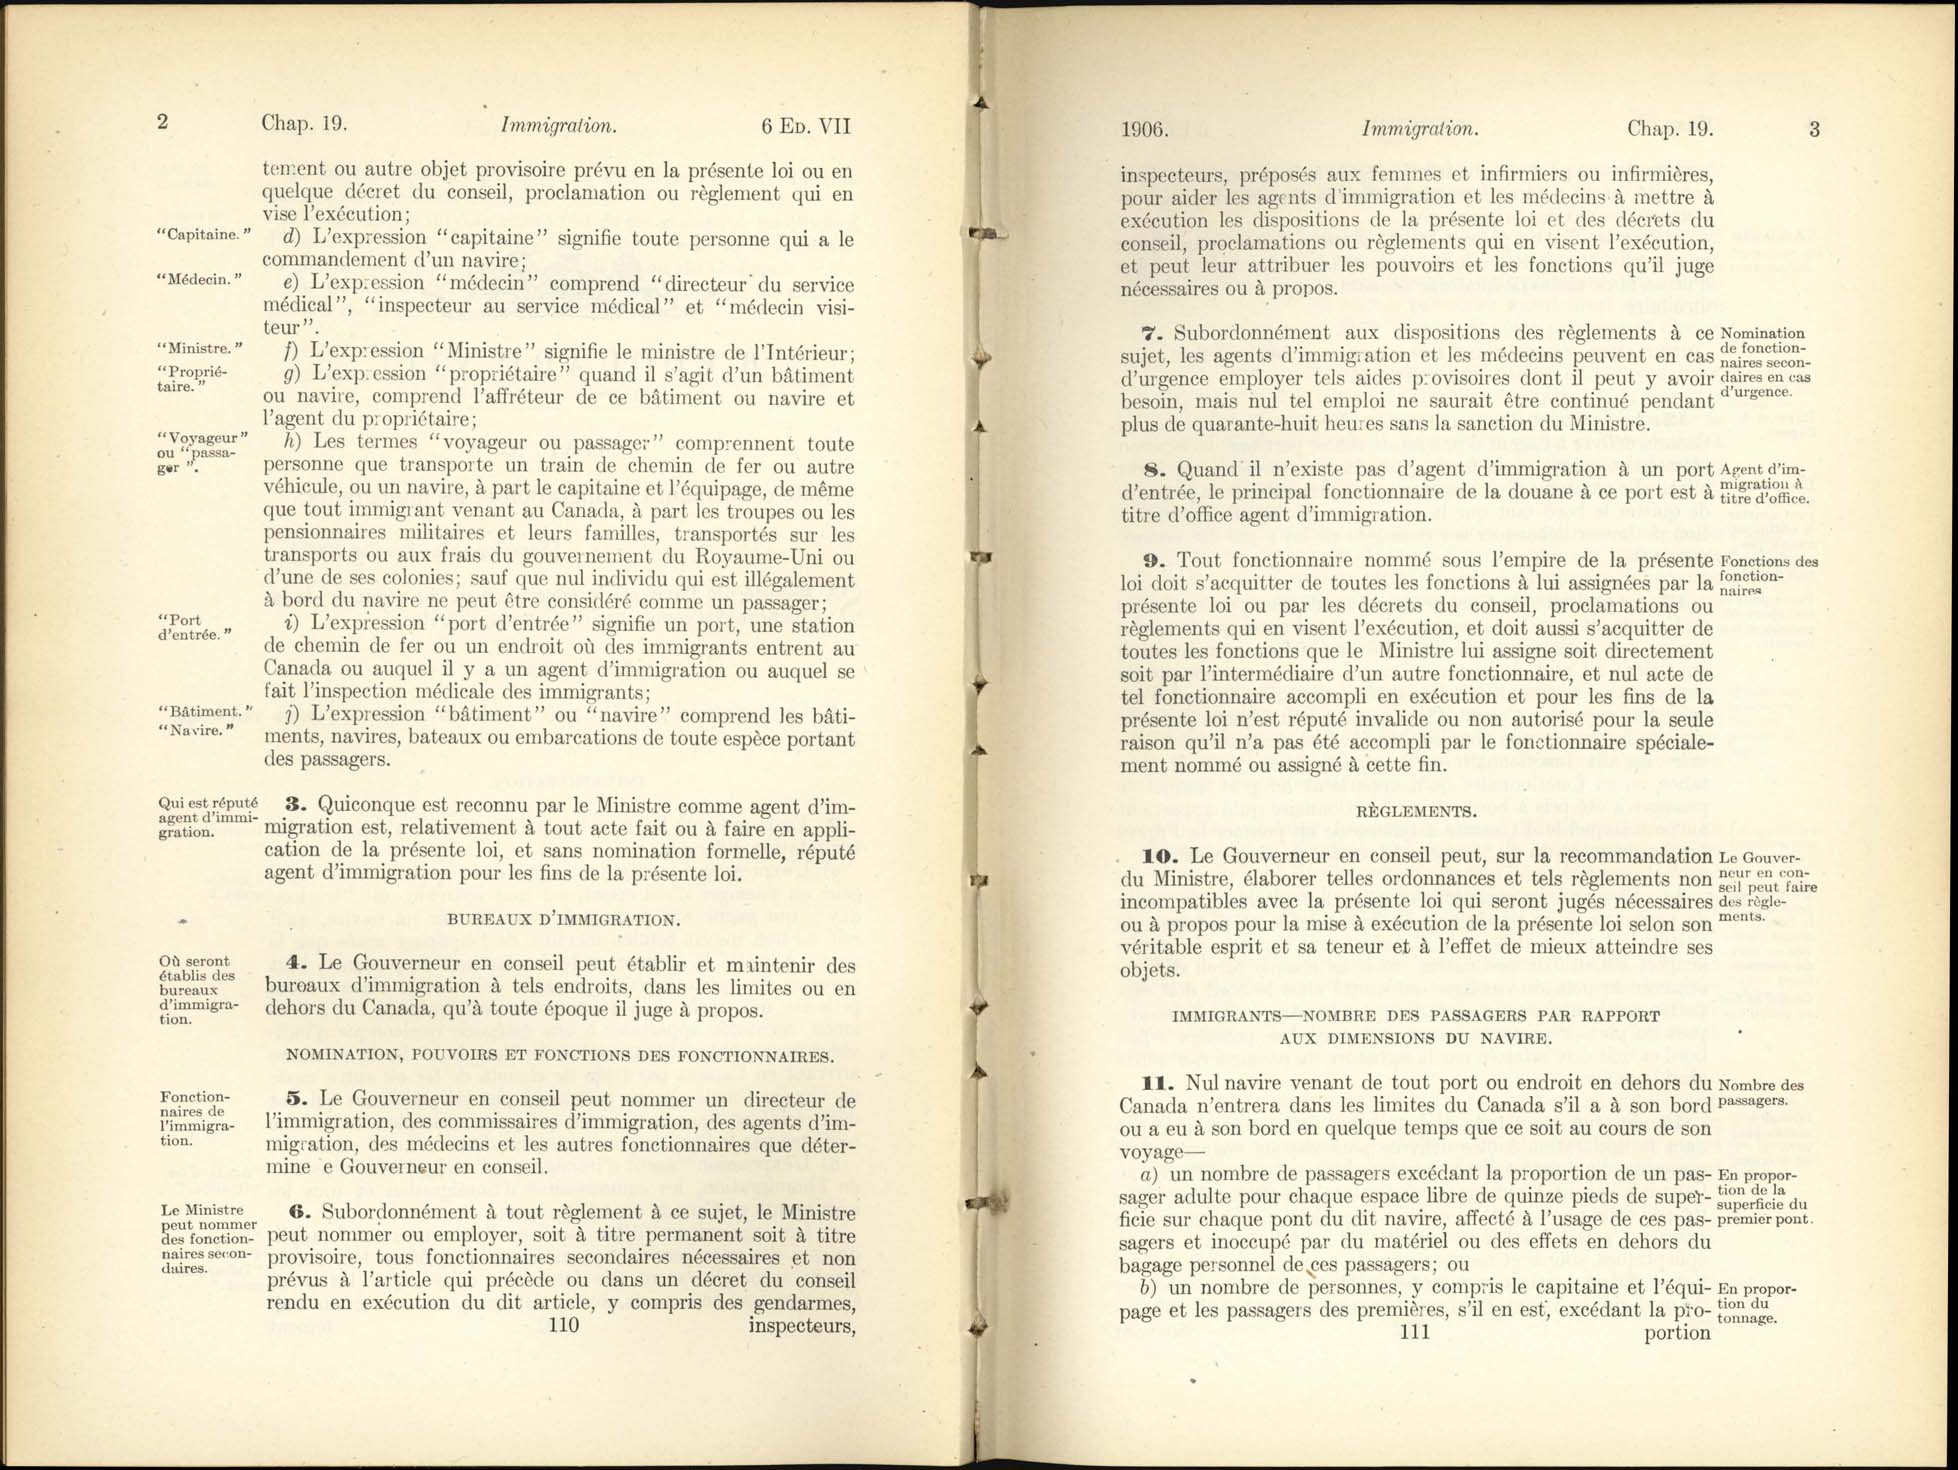 Chap. 19 Page 110, 111 Acte de l’immigration, 1906